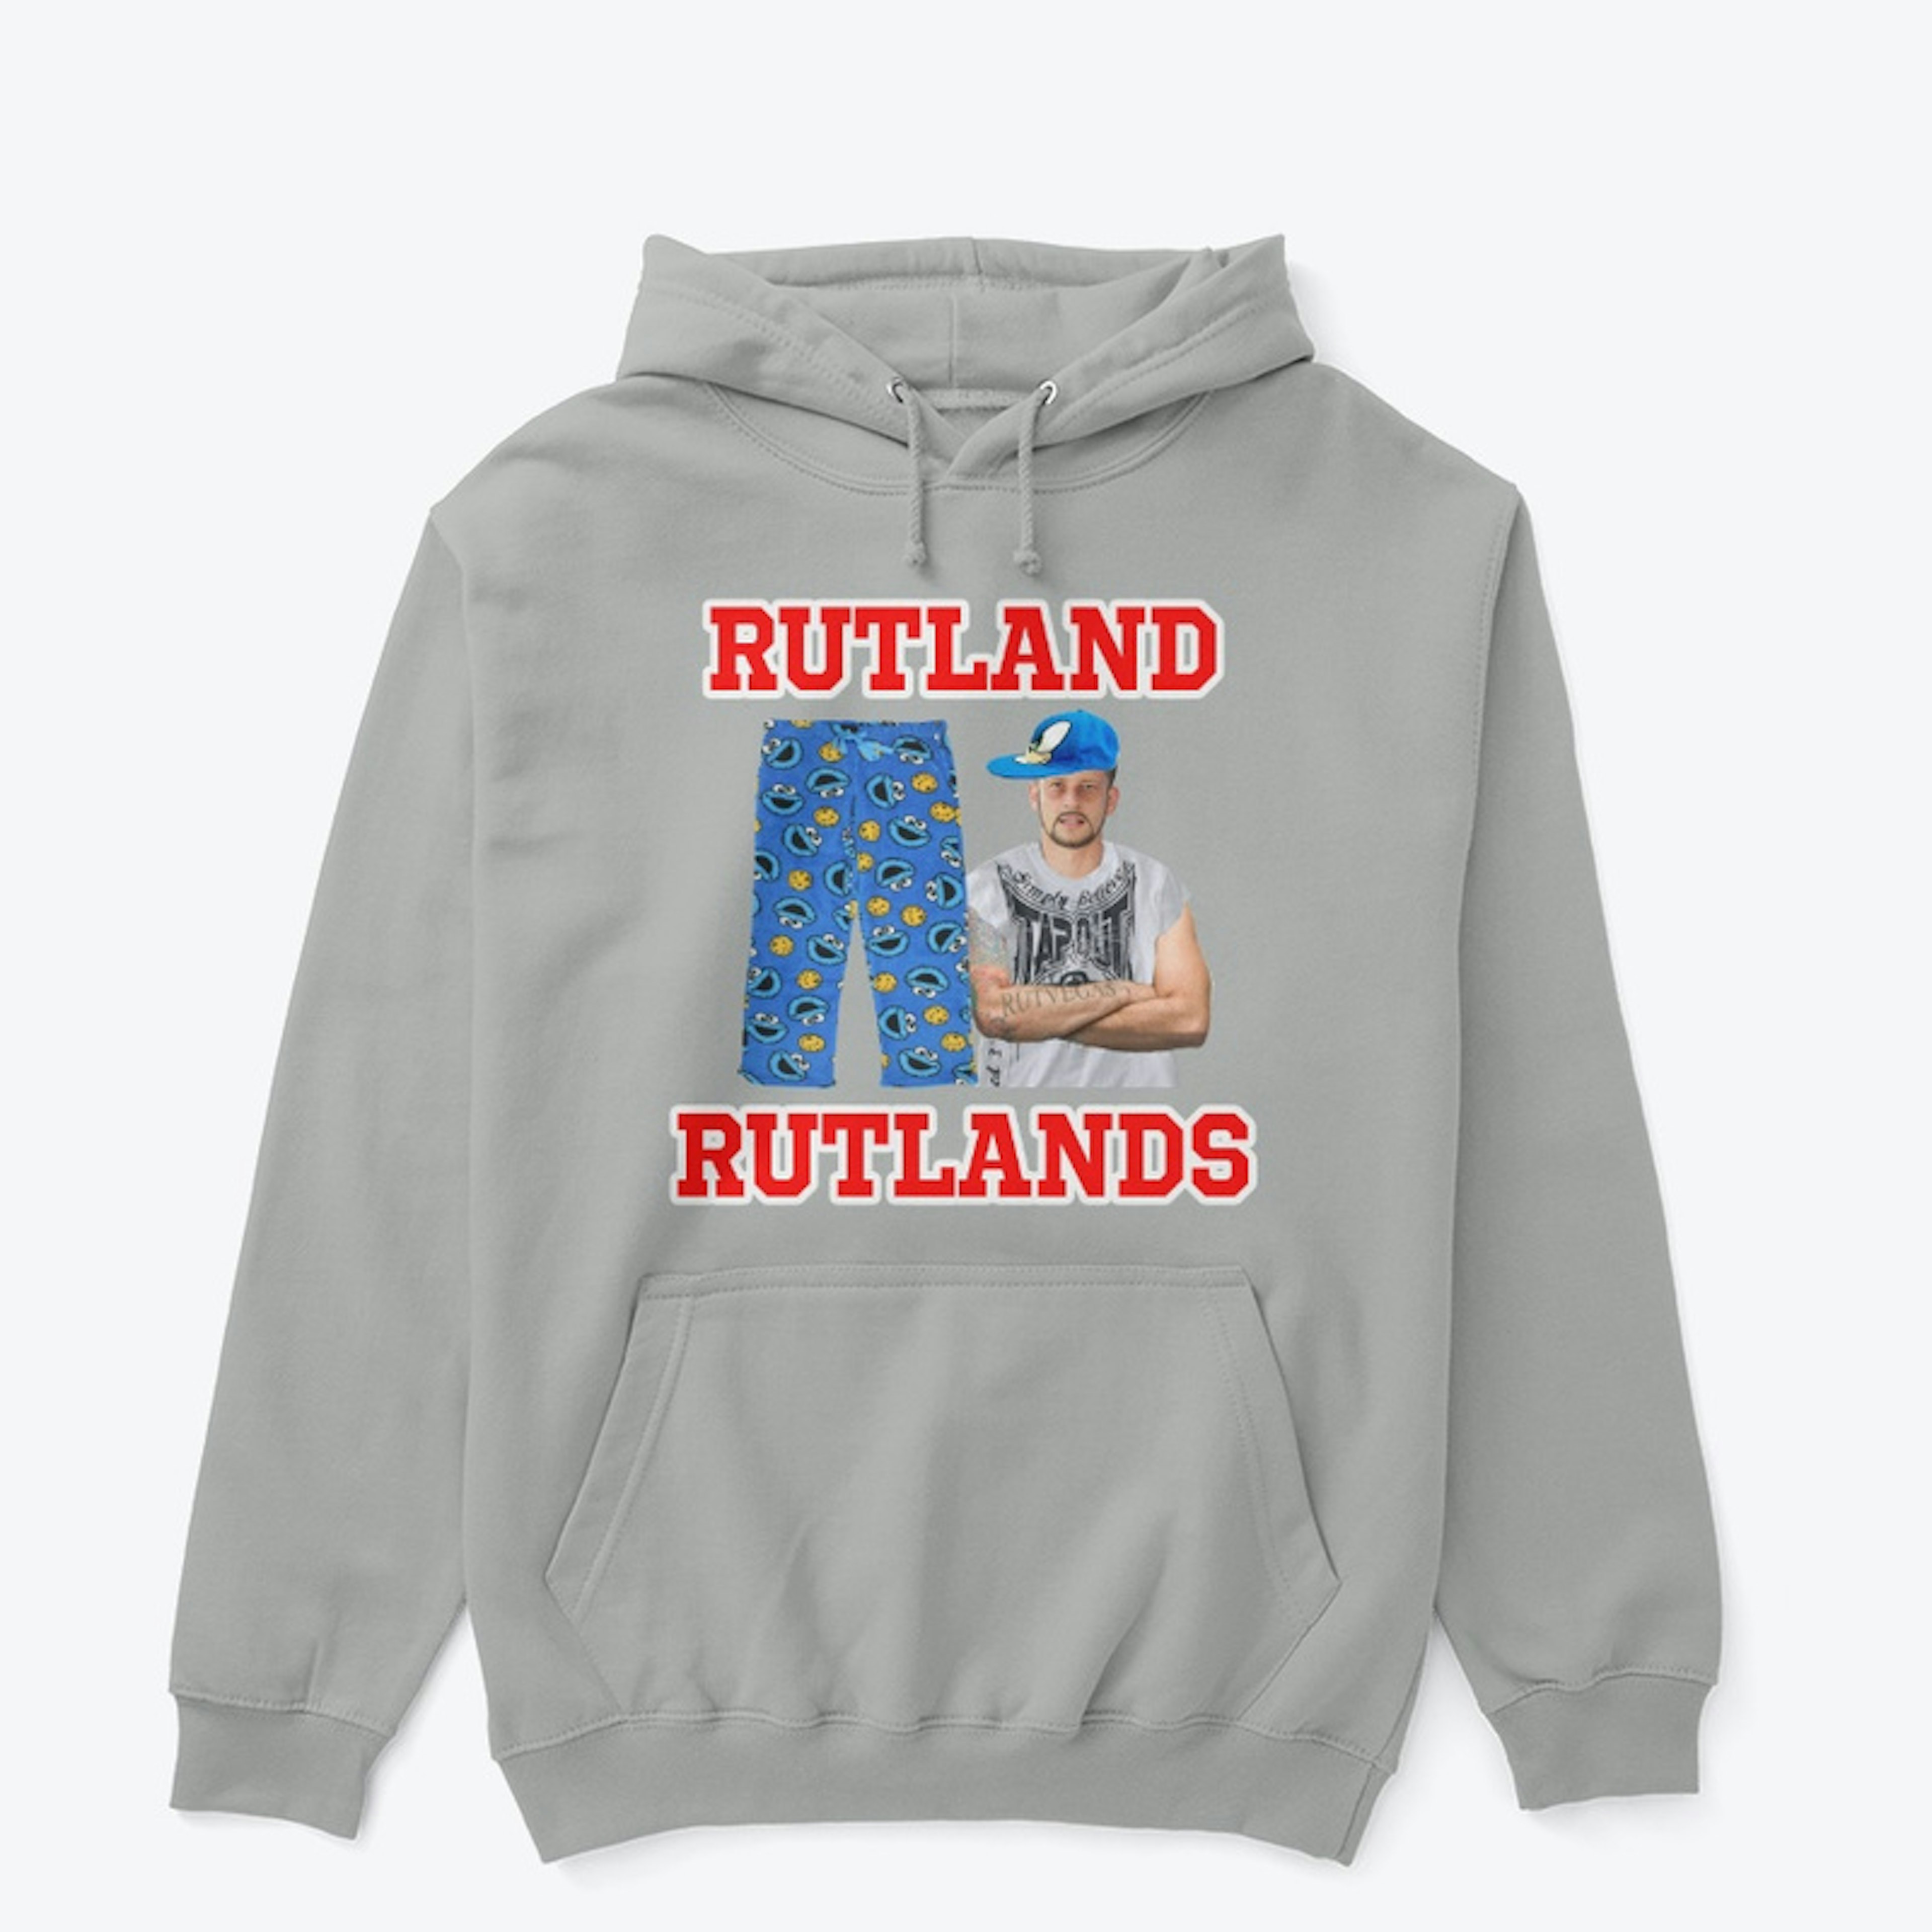 RUTLAND RUTLANDS - COOKIE MONSTER PJS